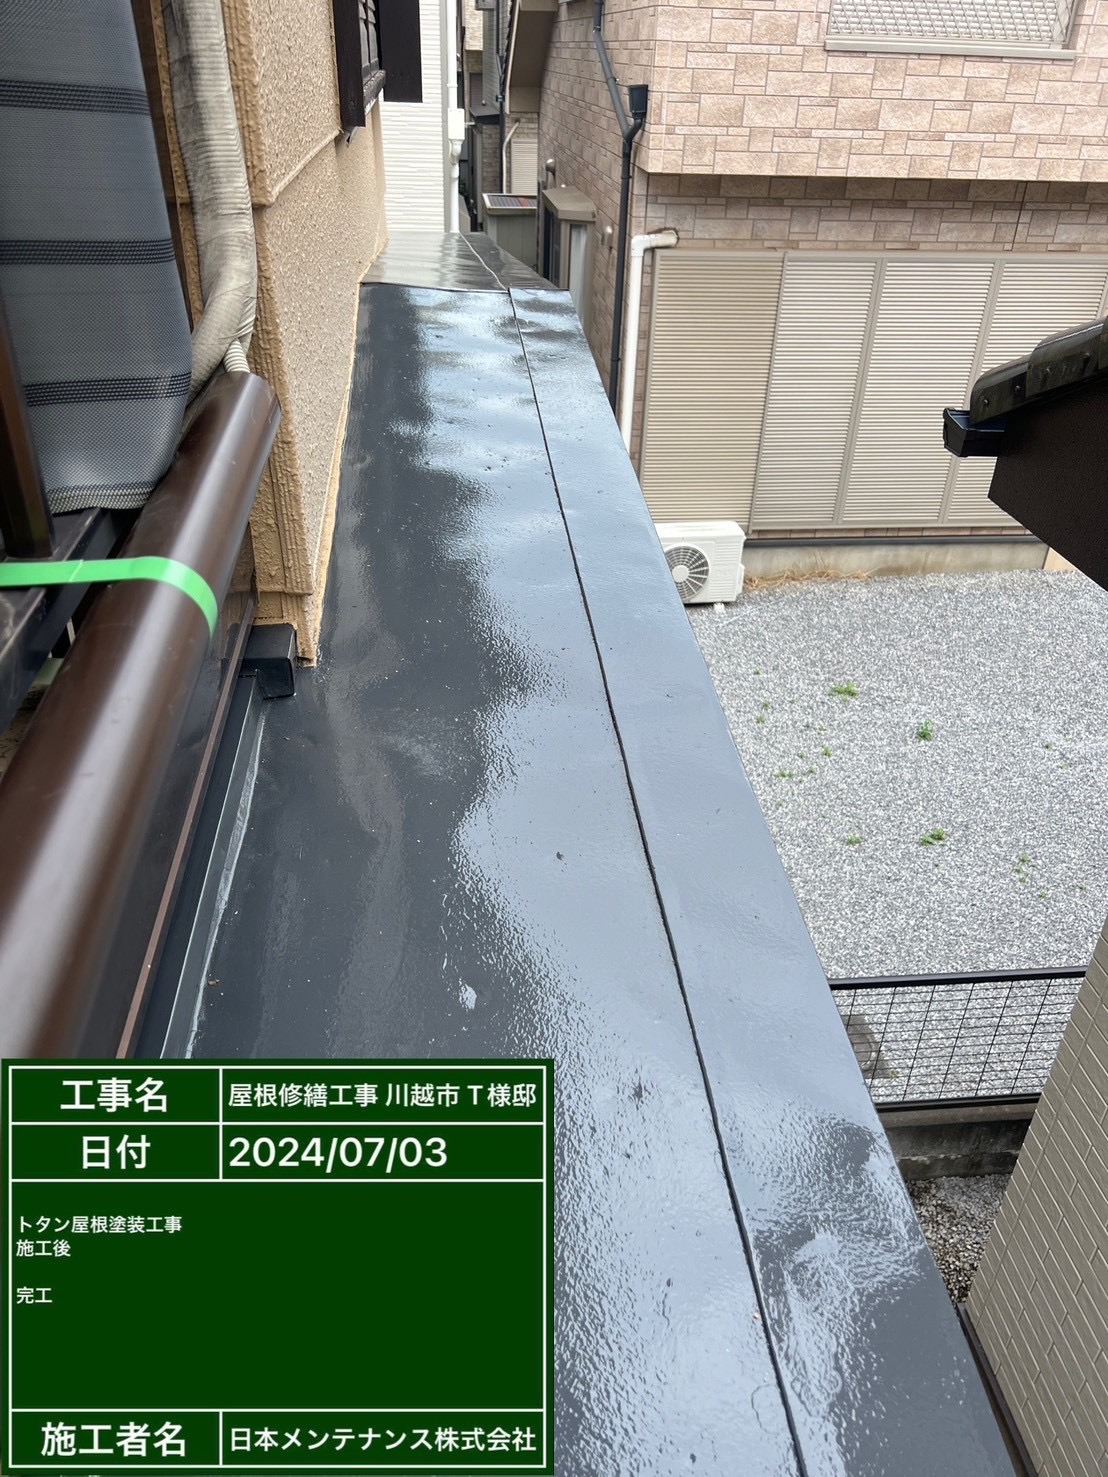 埼玉県川越市で劣化した屋根漆喰をやり替えて、トタン屋根の塗装も行いました！